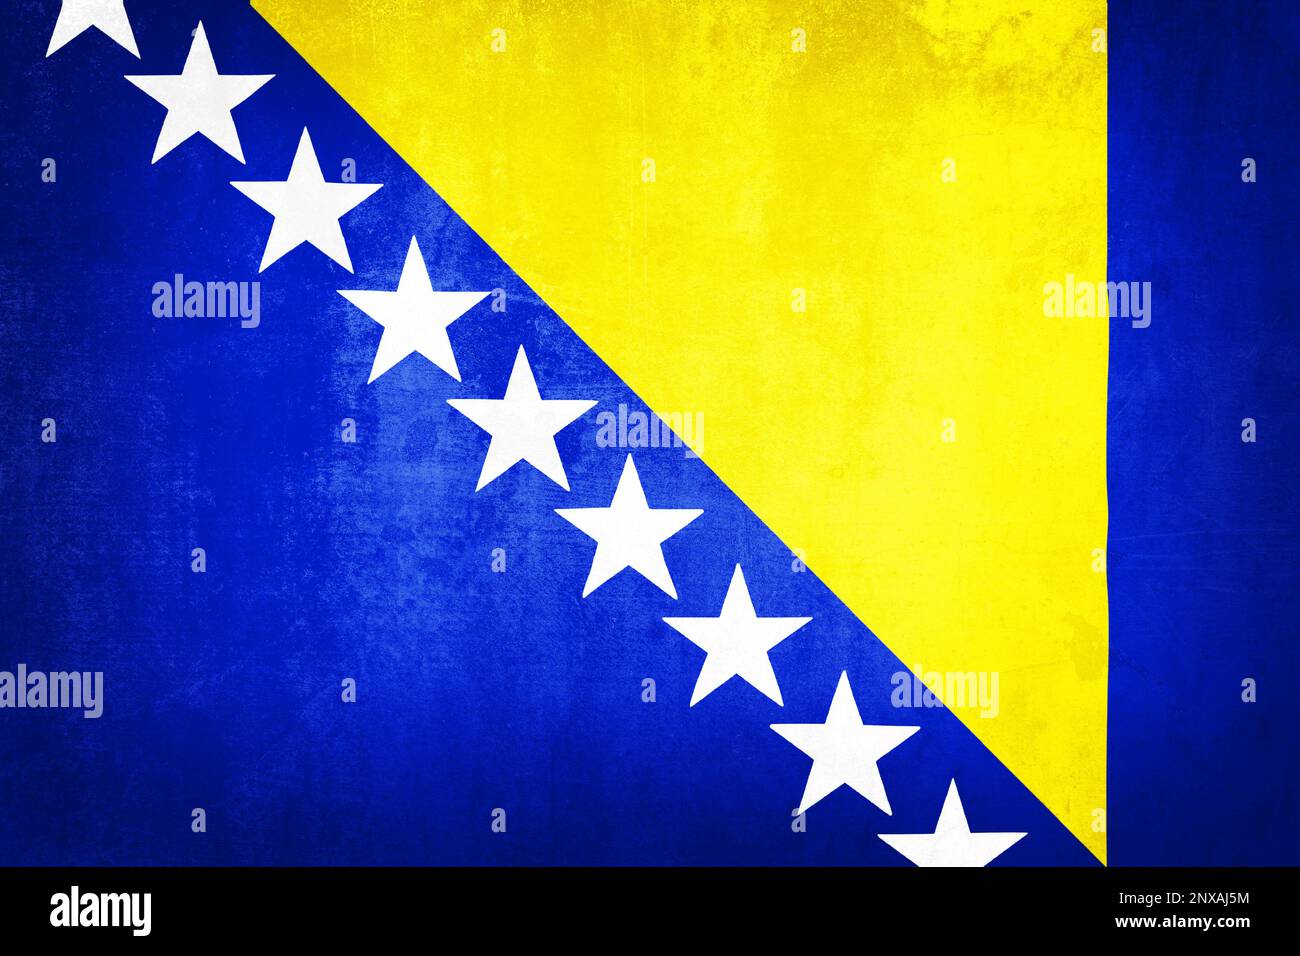 Grunge illustration of Bosnia and Herzegovina flag, concept of Bosnia and Herzegovina Stock Photo